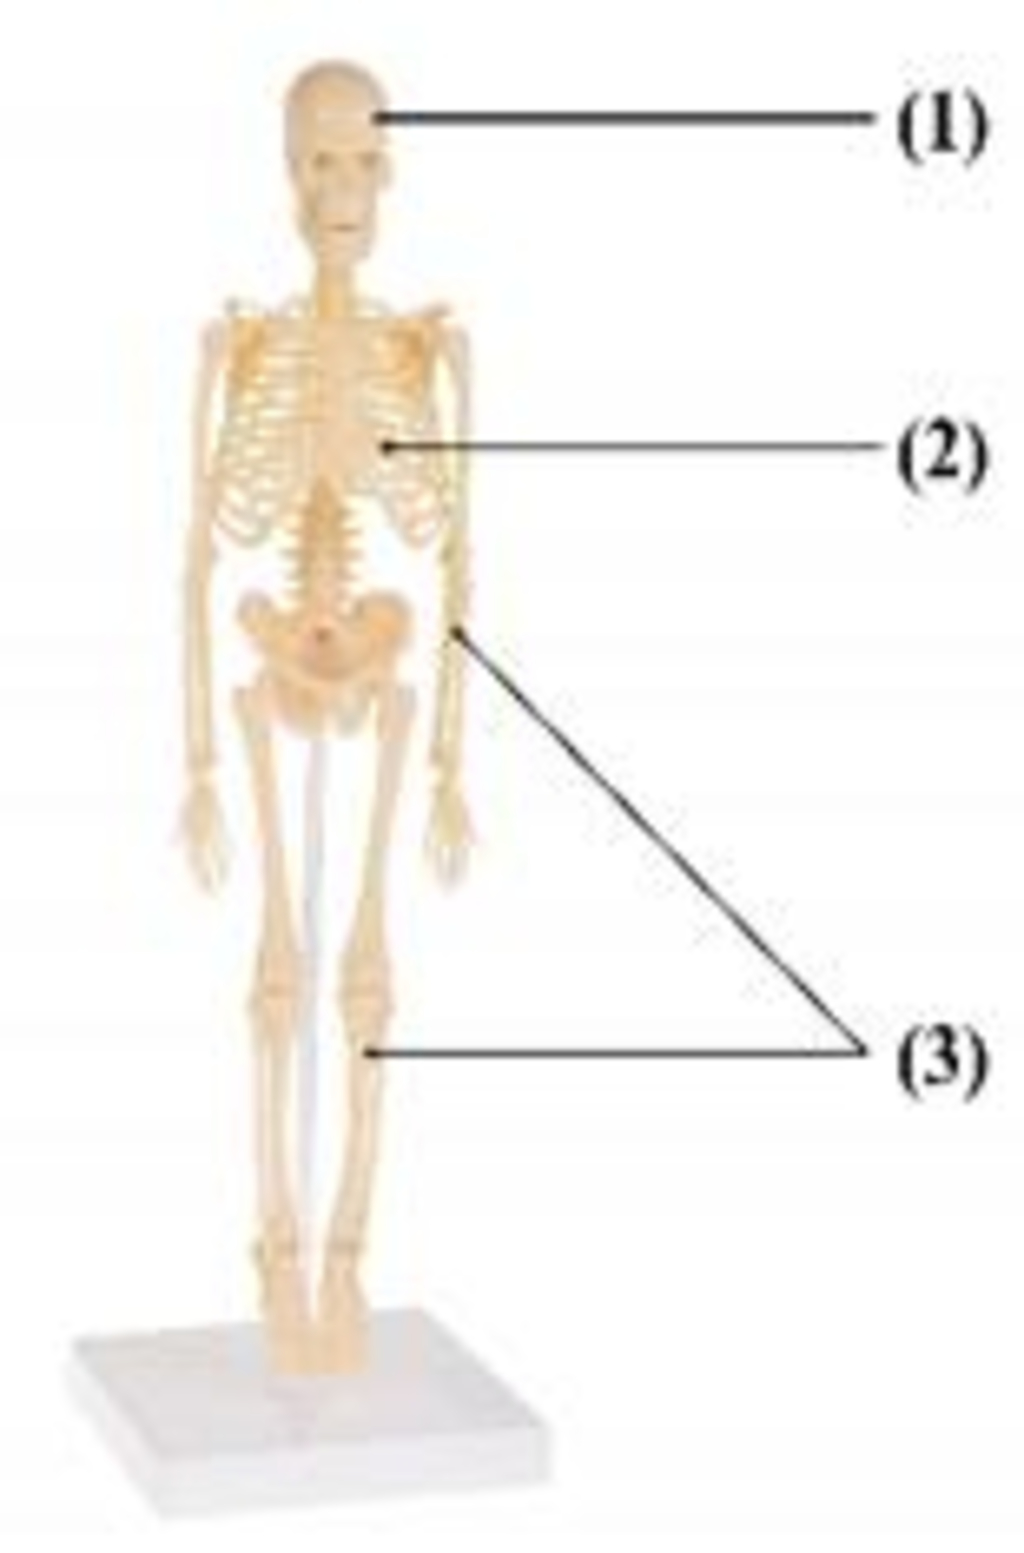 Hình ảnh bên mô tả cấu tạo bộ xương người. Các loại xương tương ...